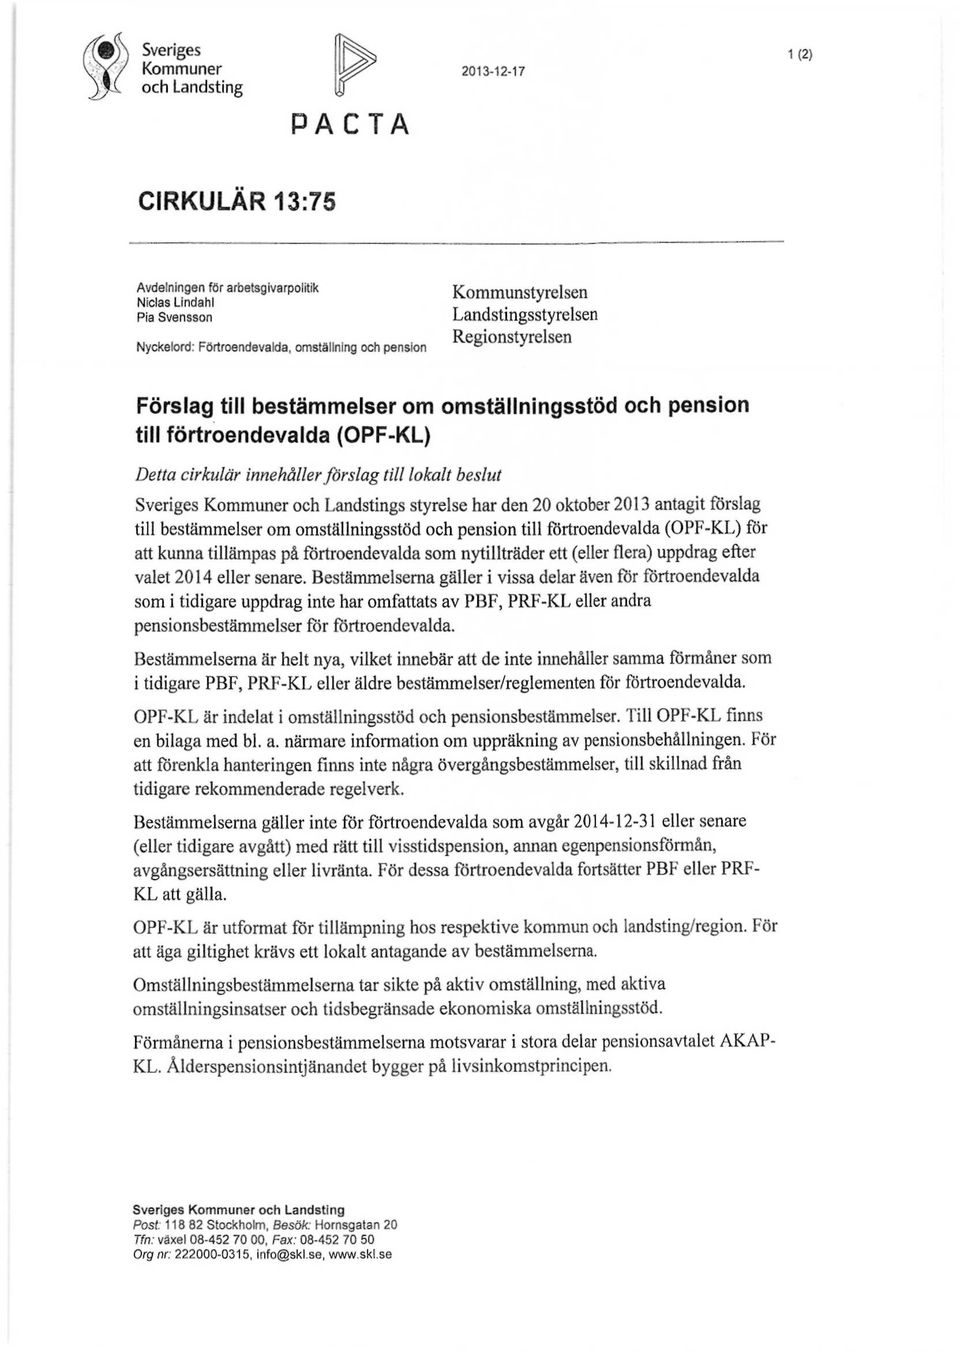 Sveriges Kommuner och Landstings styrelse har den 20 oktober 2013 antagit förslag till bestämmelser om omställningsstöd och pension till förtroendevalda (OPF-KL) för att kunna tillämpas på